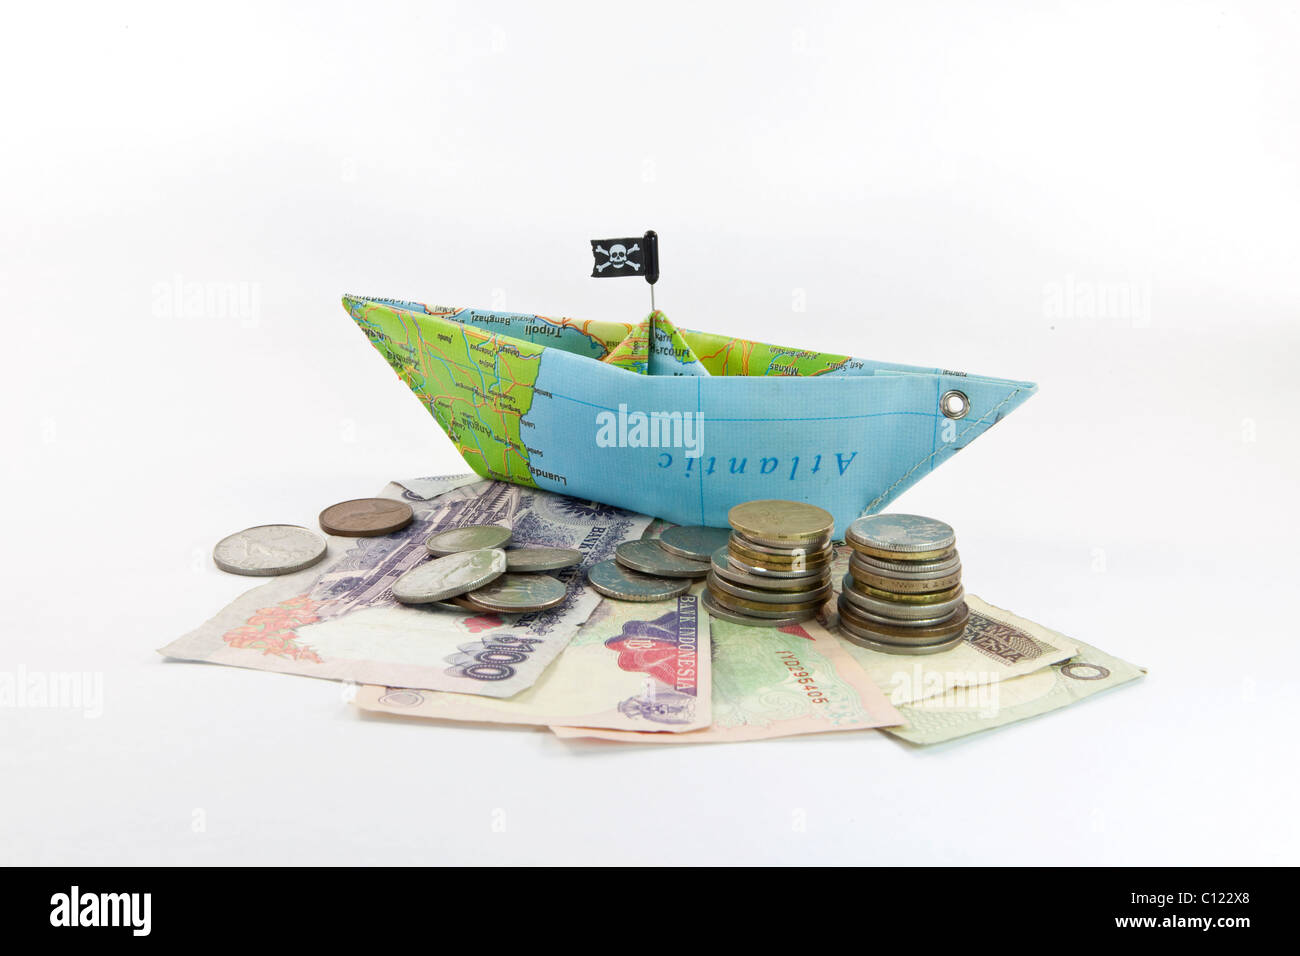 Bateau de pirate, piratage, argent, image symbolique de rançon dans une monnaie étrangère Banque D'Images